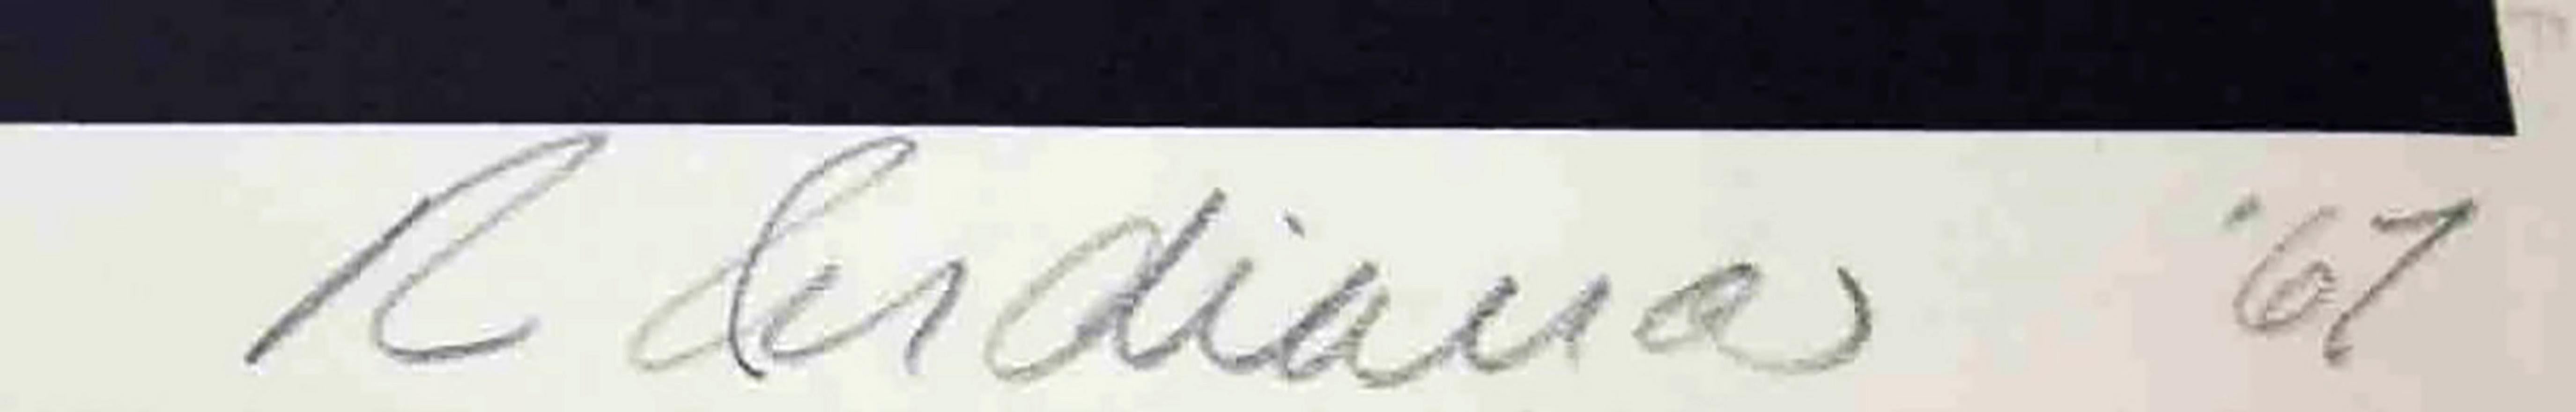 Stable Gallery 16 Oktober 1962 Hand signiert und beschriftet von Robert Indiana - SELTEN im Angebot 1